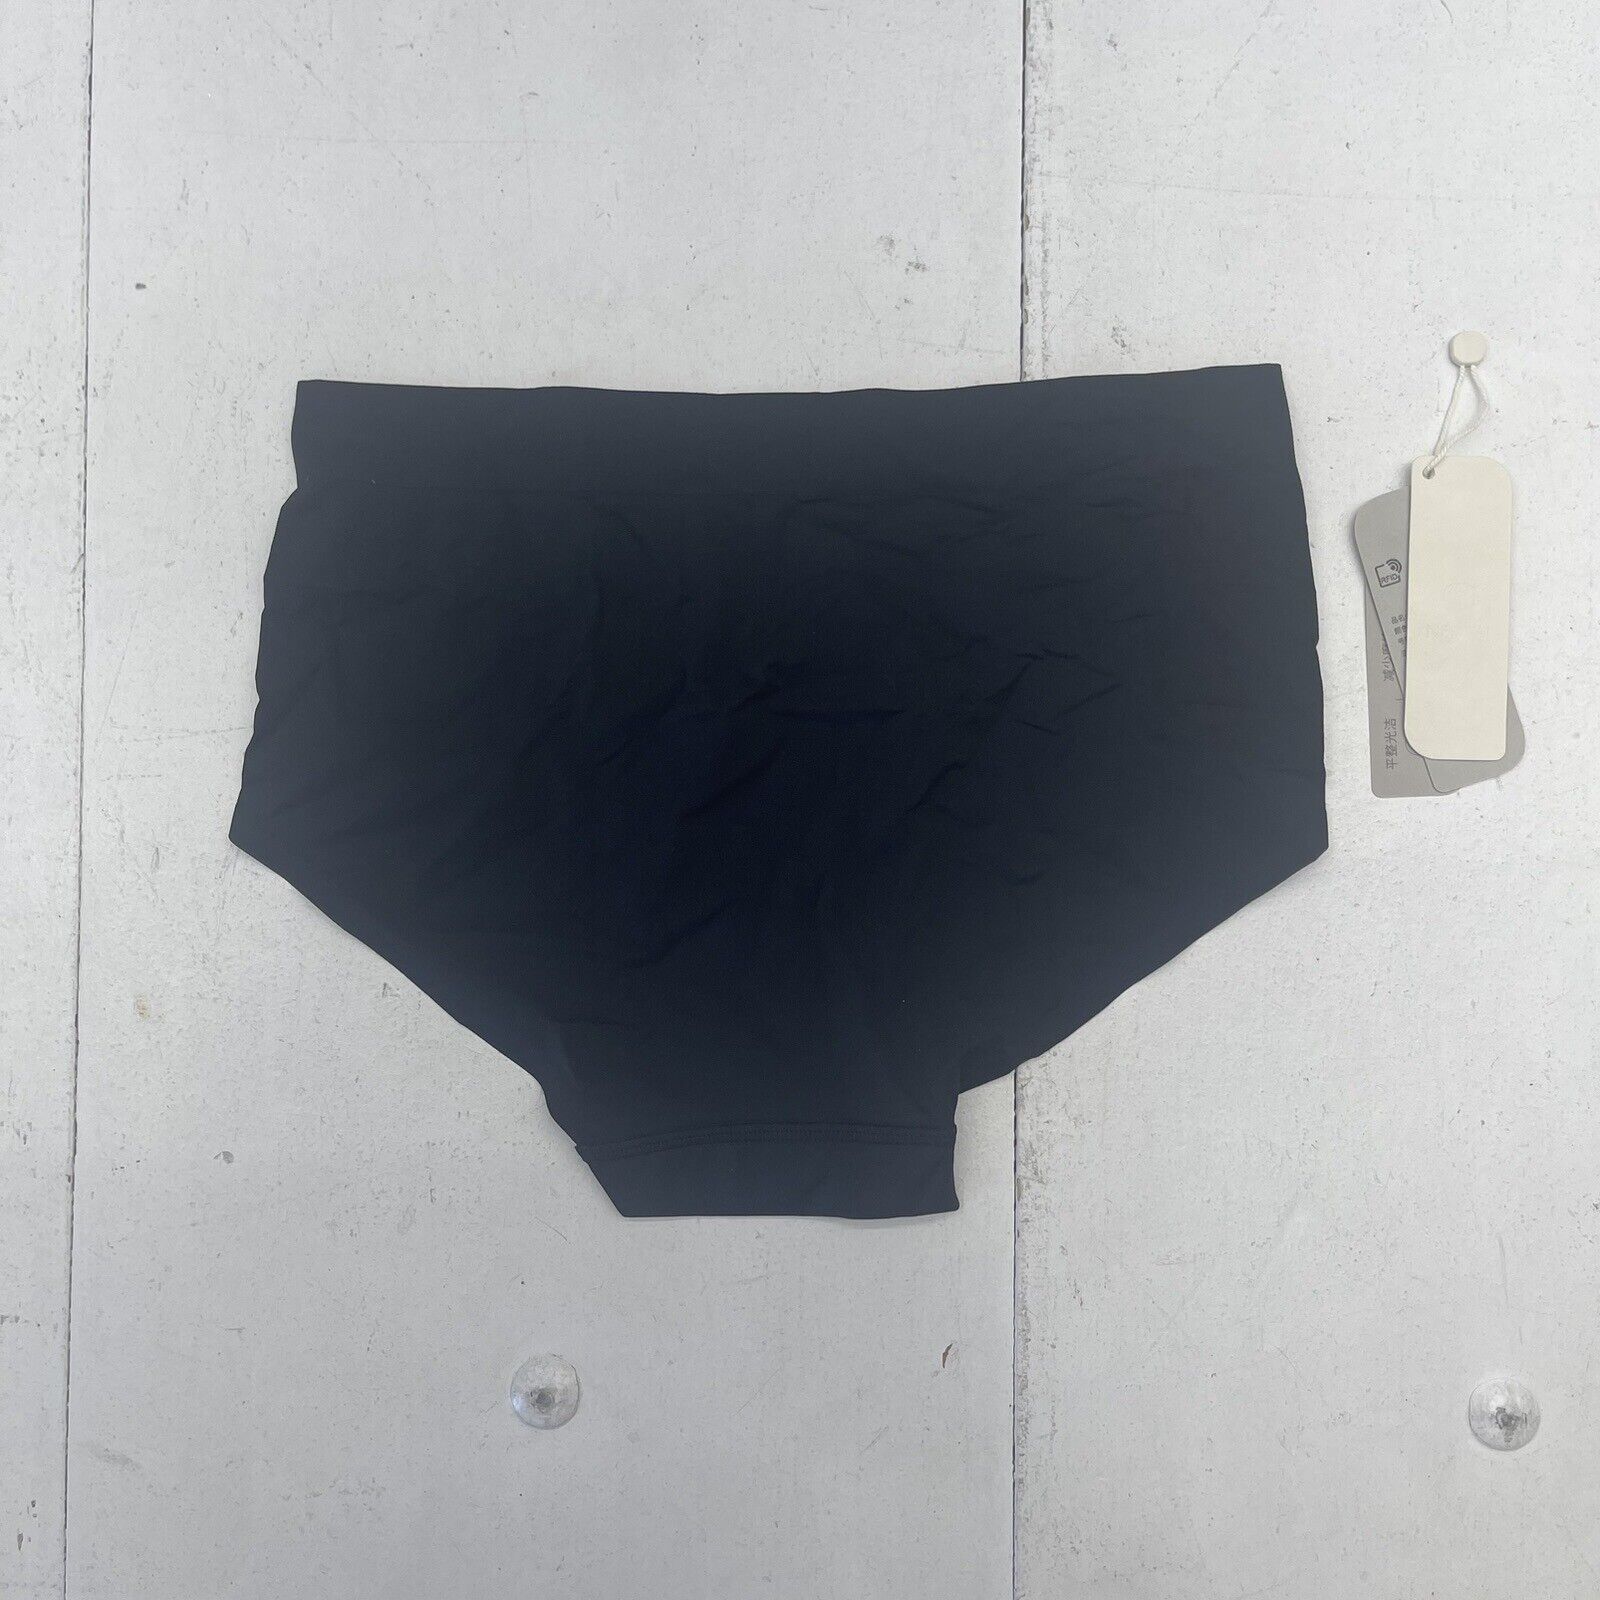 Neiwai Black Seamless Brief Underwear Women's Size M/L New